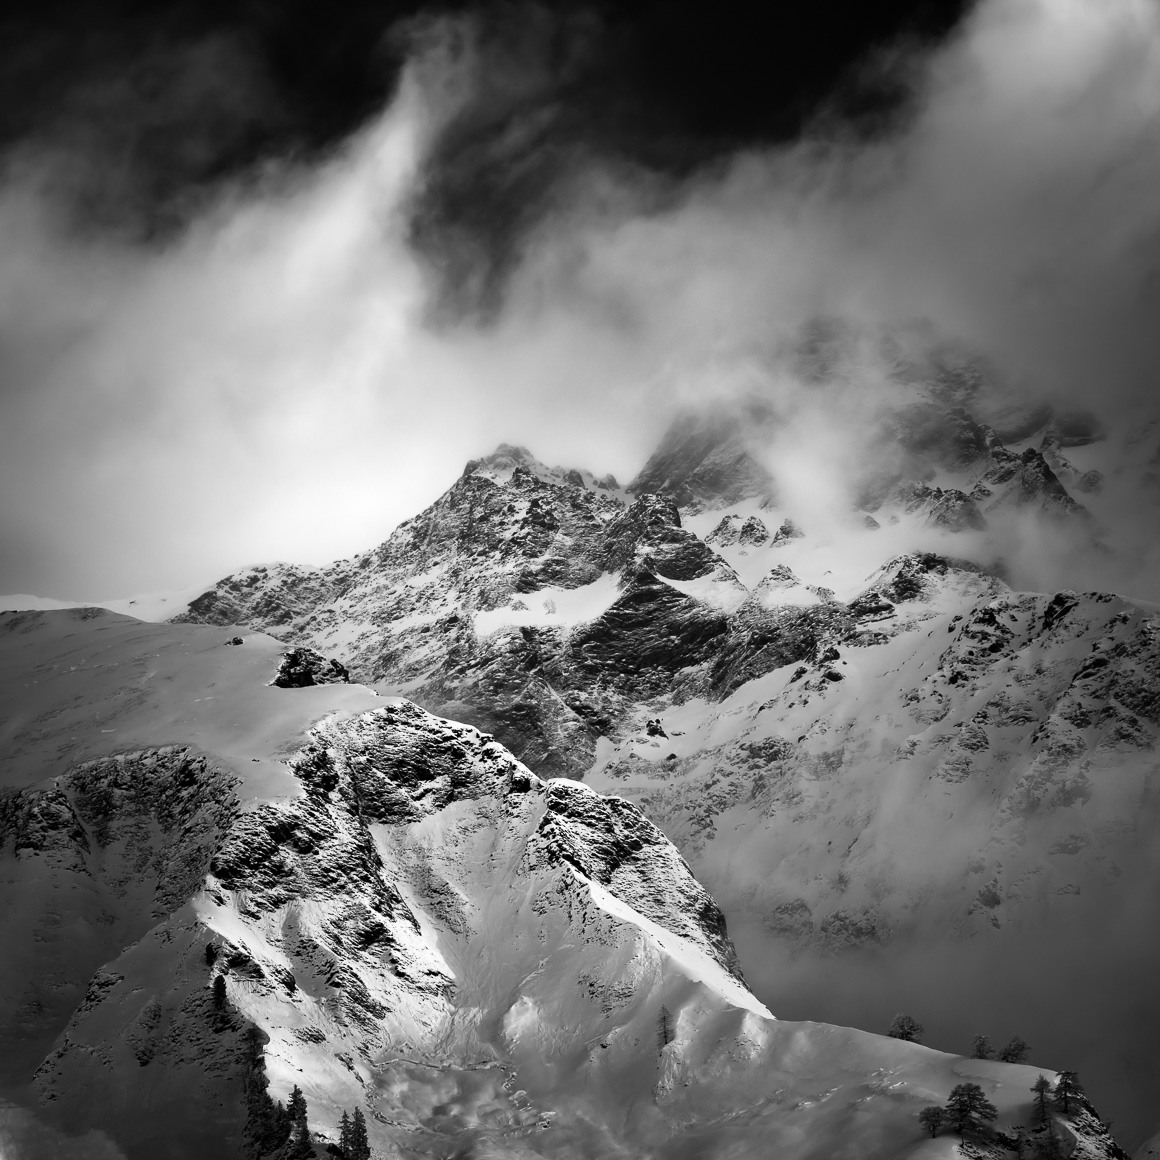 Mystic Mountain, a Swiss mountain landscape in B&W